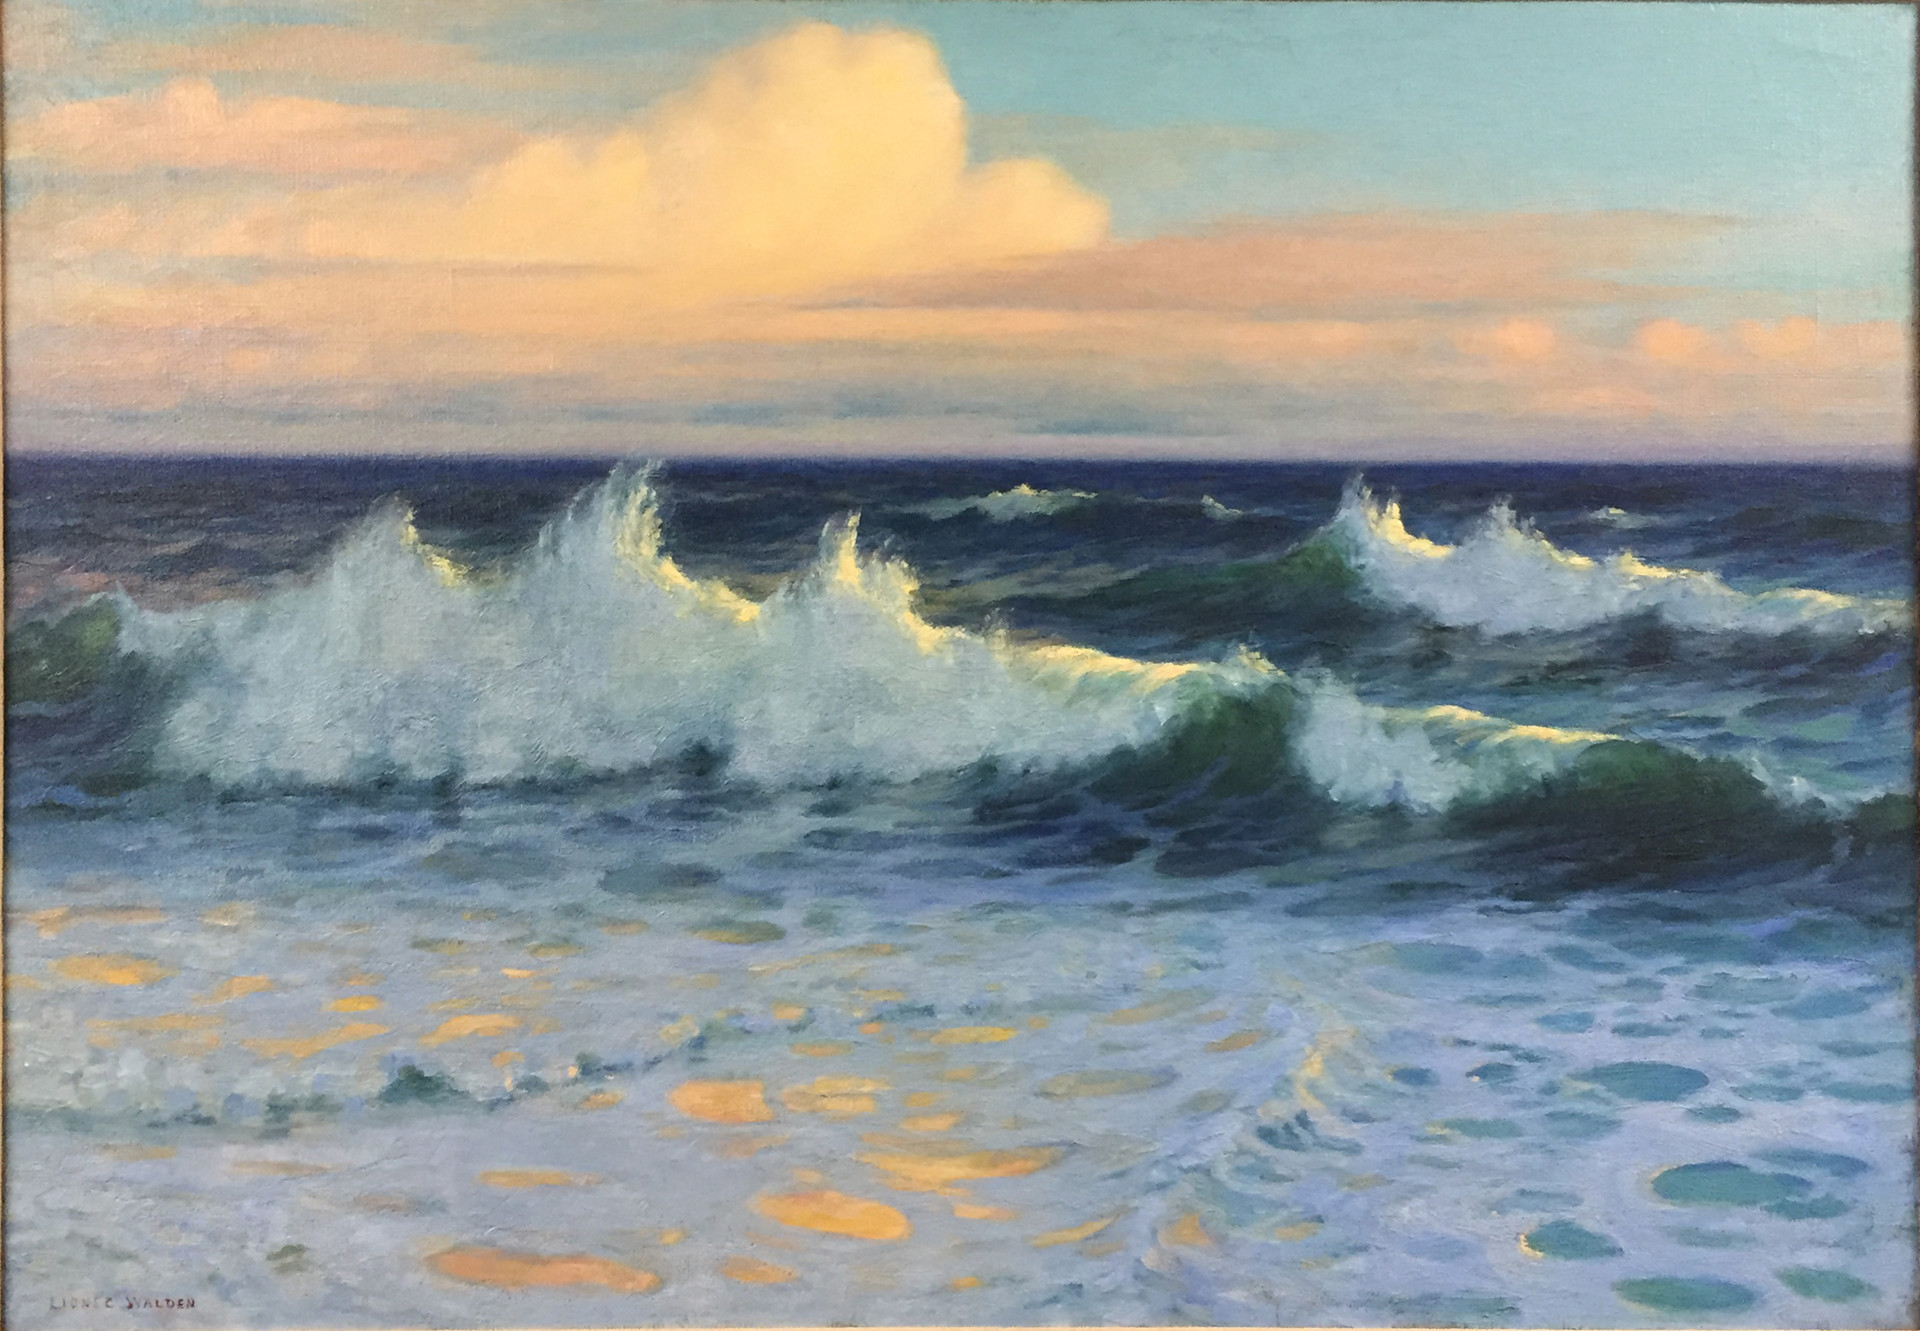 Breaking Waves, Hawaii by Lionel Walden